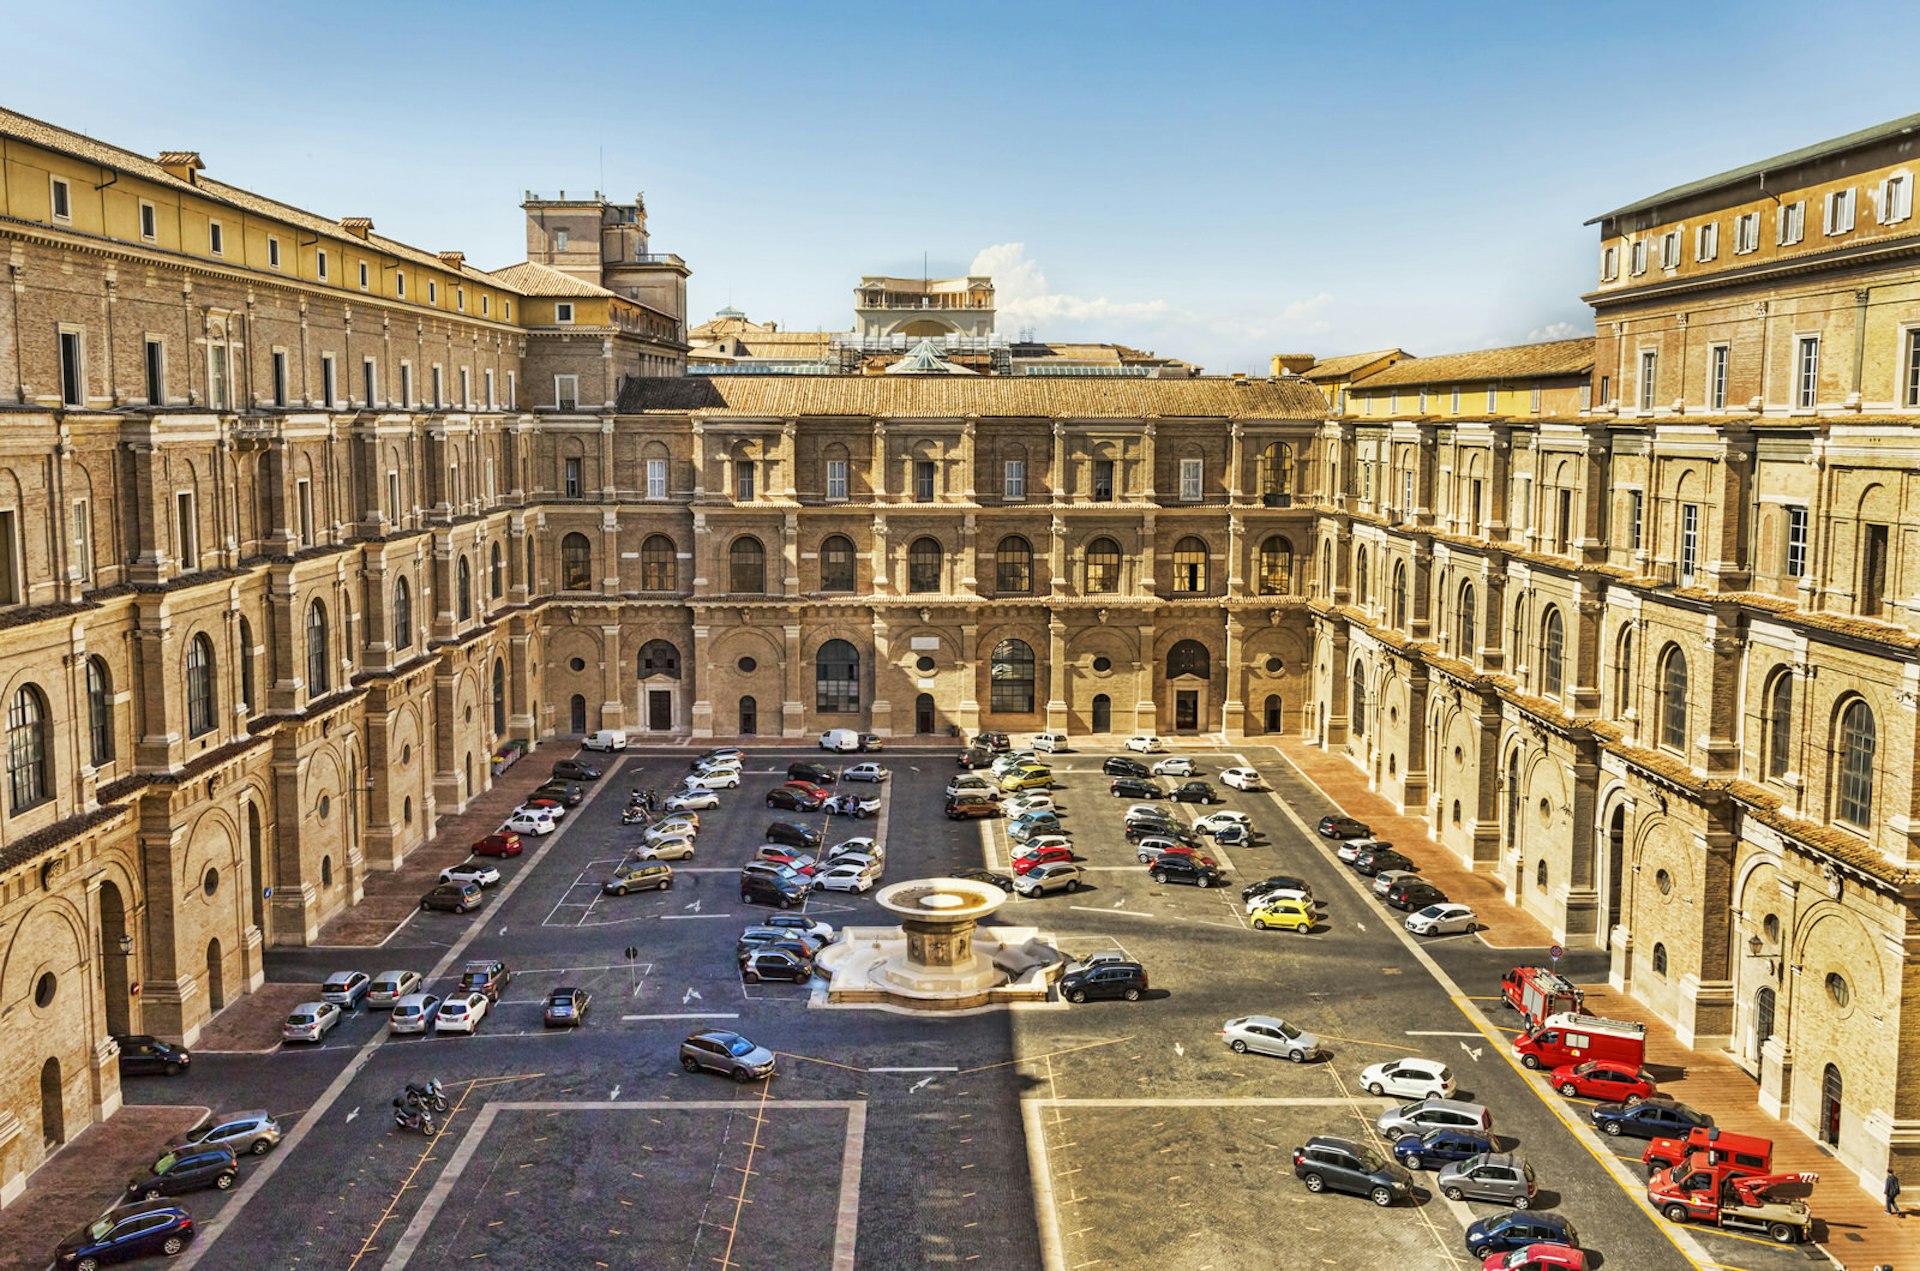 The Vatican’s Cortile del Belvedere (Belvedere Courtyard)